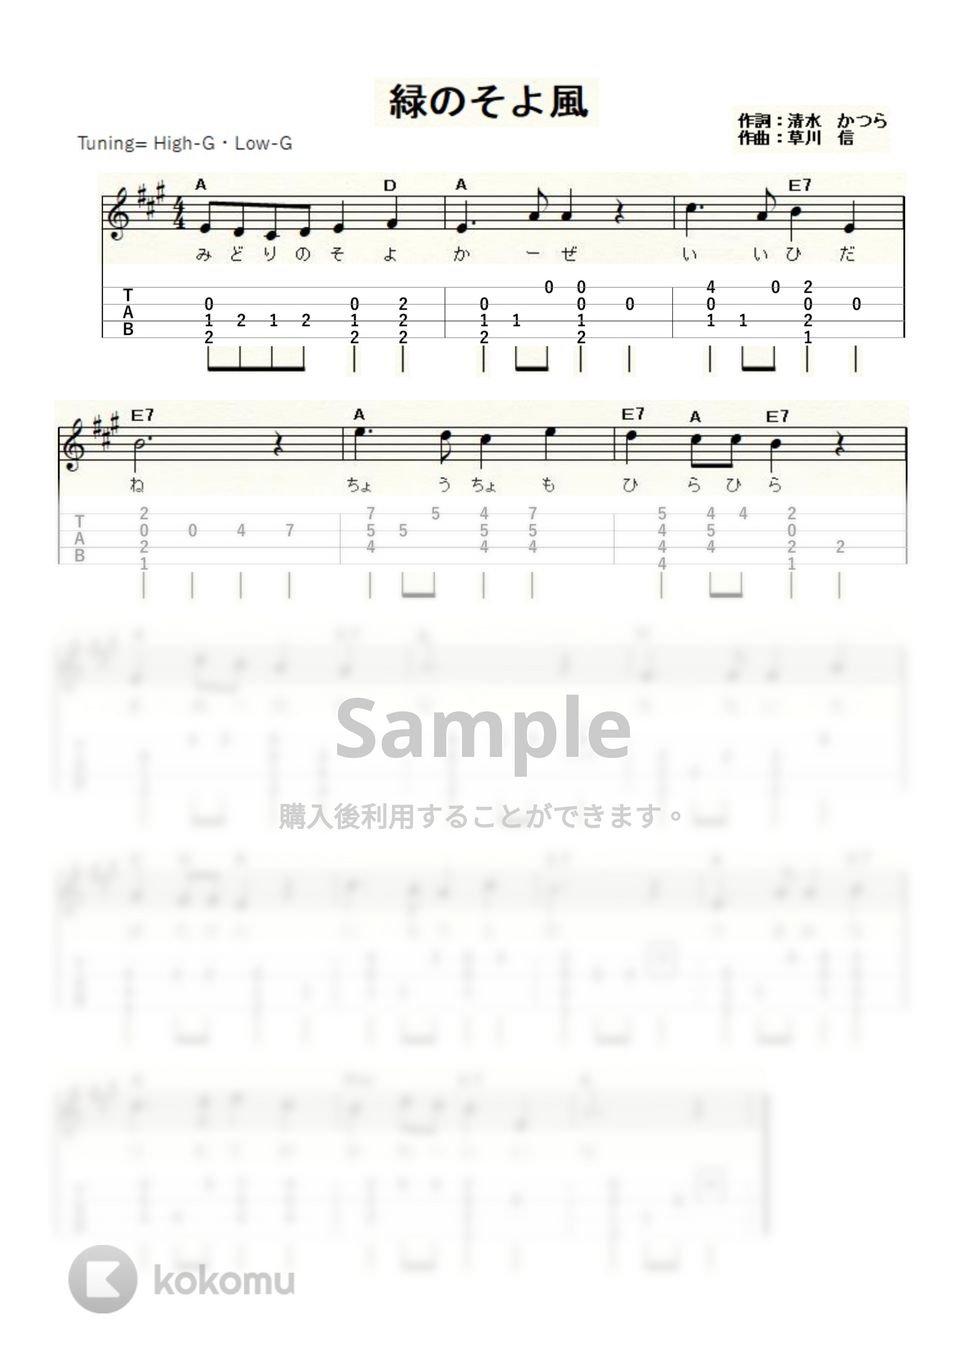 緑のそよ風 (ｳｸﾚﾚｿﾛ / High-G・Low-G / 初級) by ukulelepapa